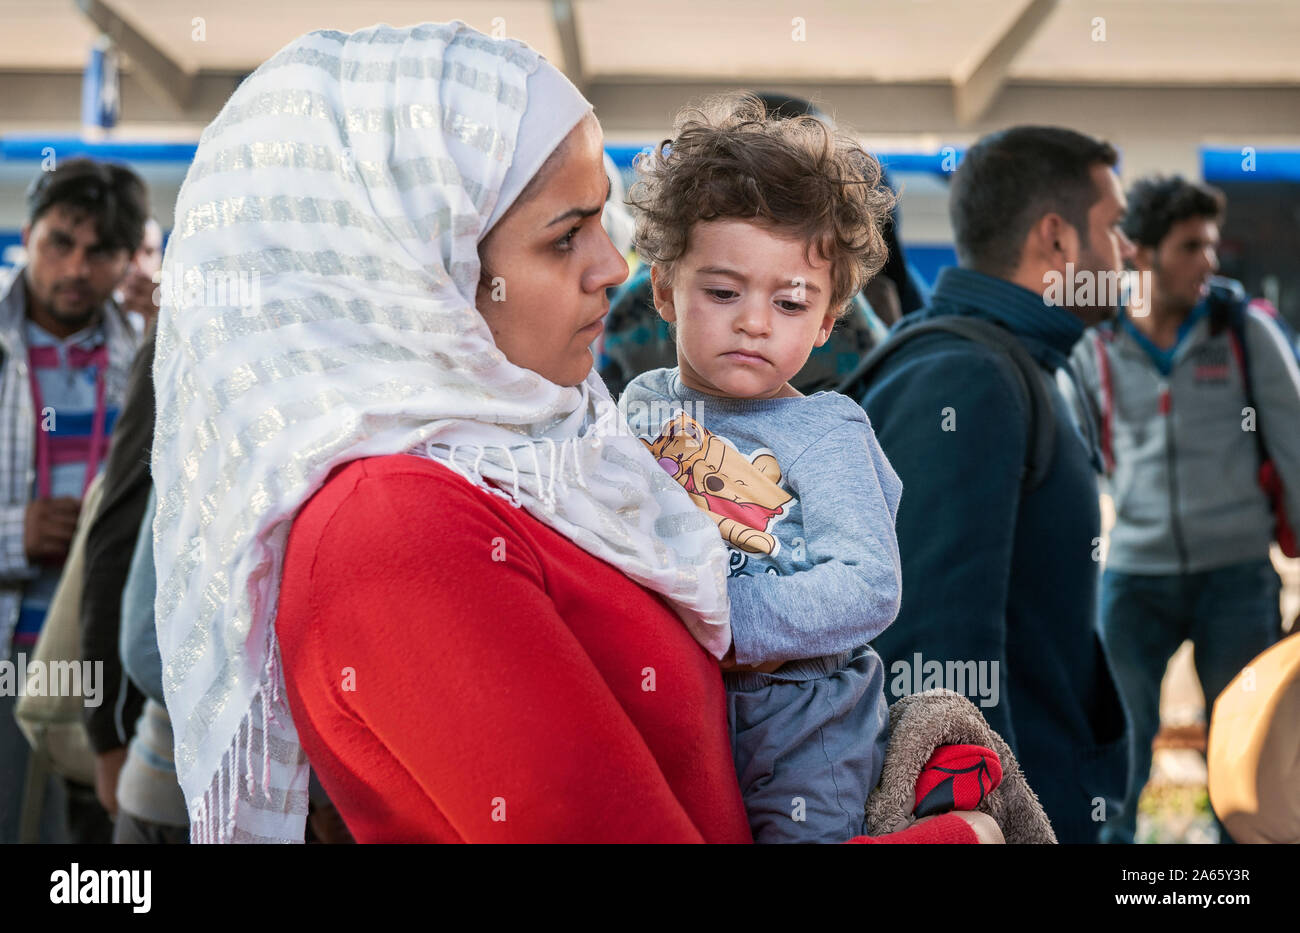 Monaco di Baviera, Germania - Settembre 10th, 2015: i rifugiati dalla Siria, Afghanistan e dei paesi balcanici hopping sul prossimo treno alla stazione ferroviaria principale di Monaco di Baviera. Foto Stock